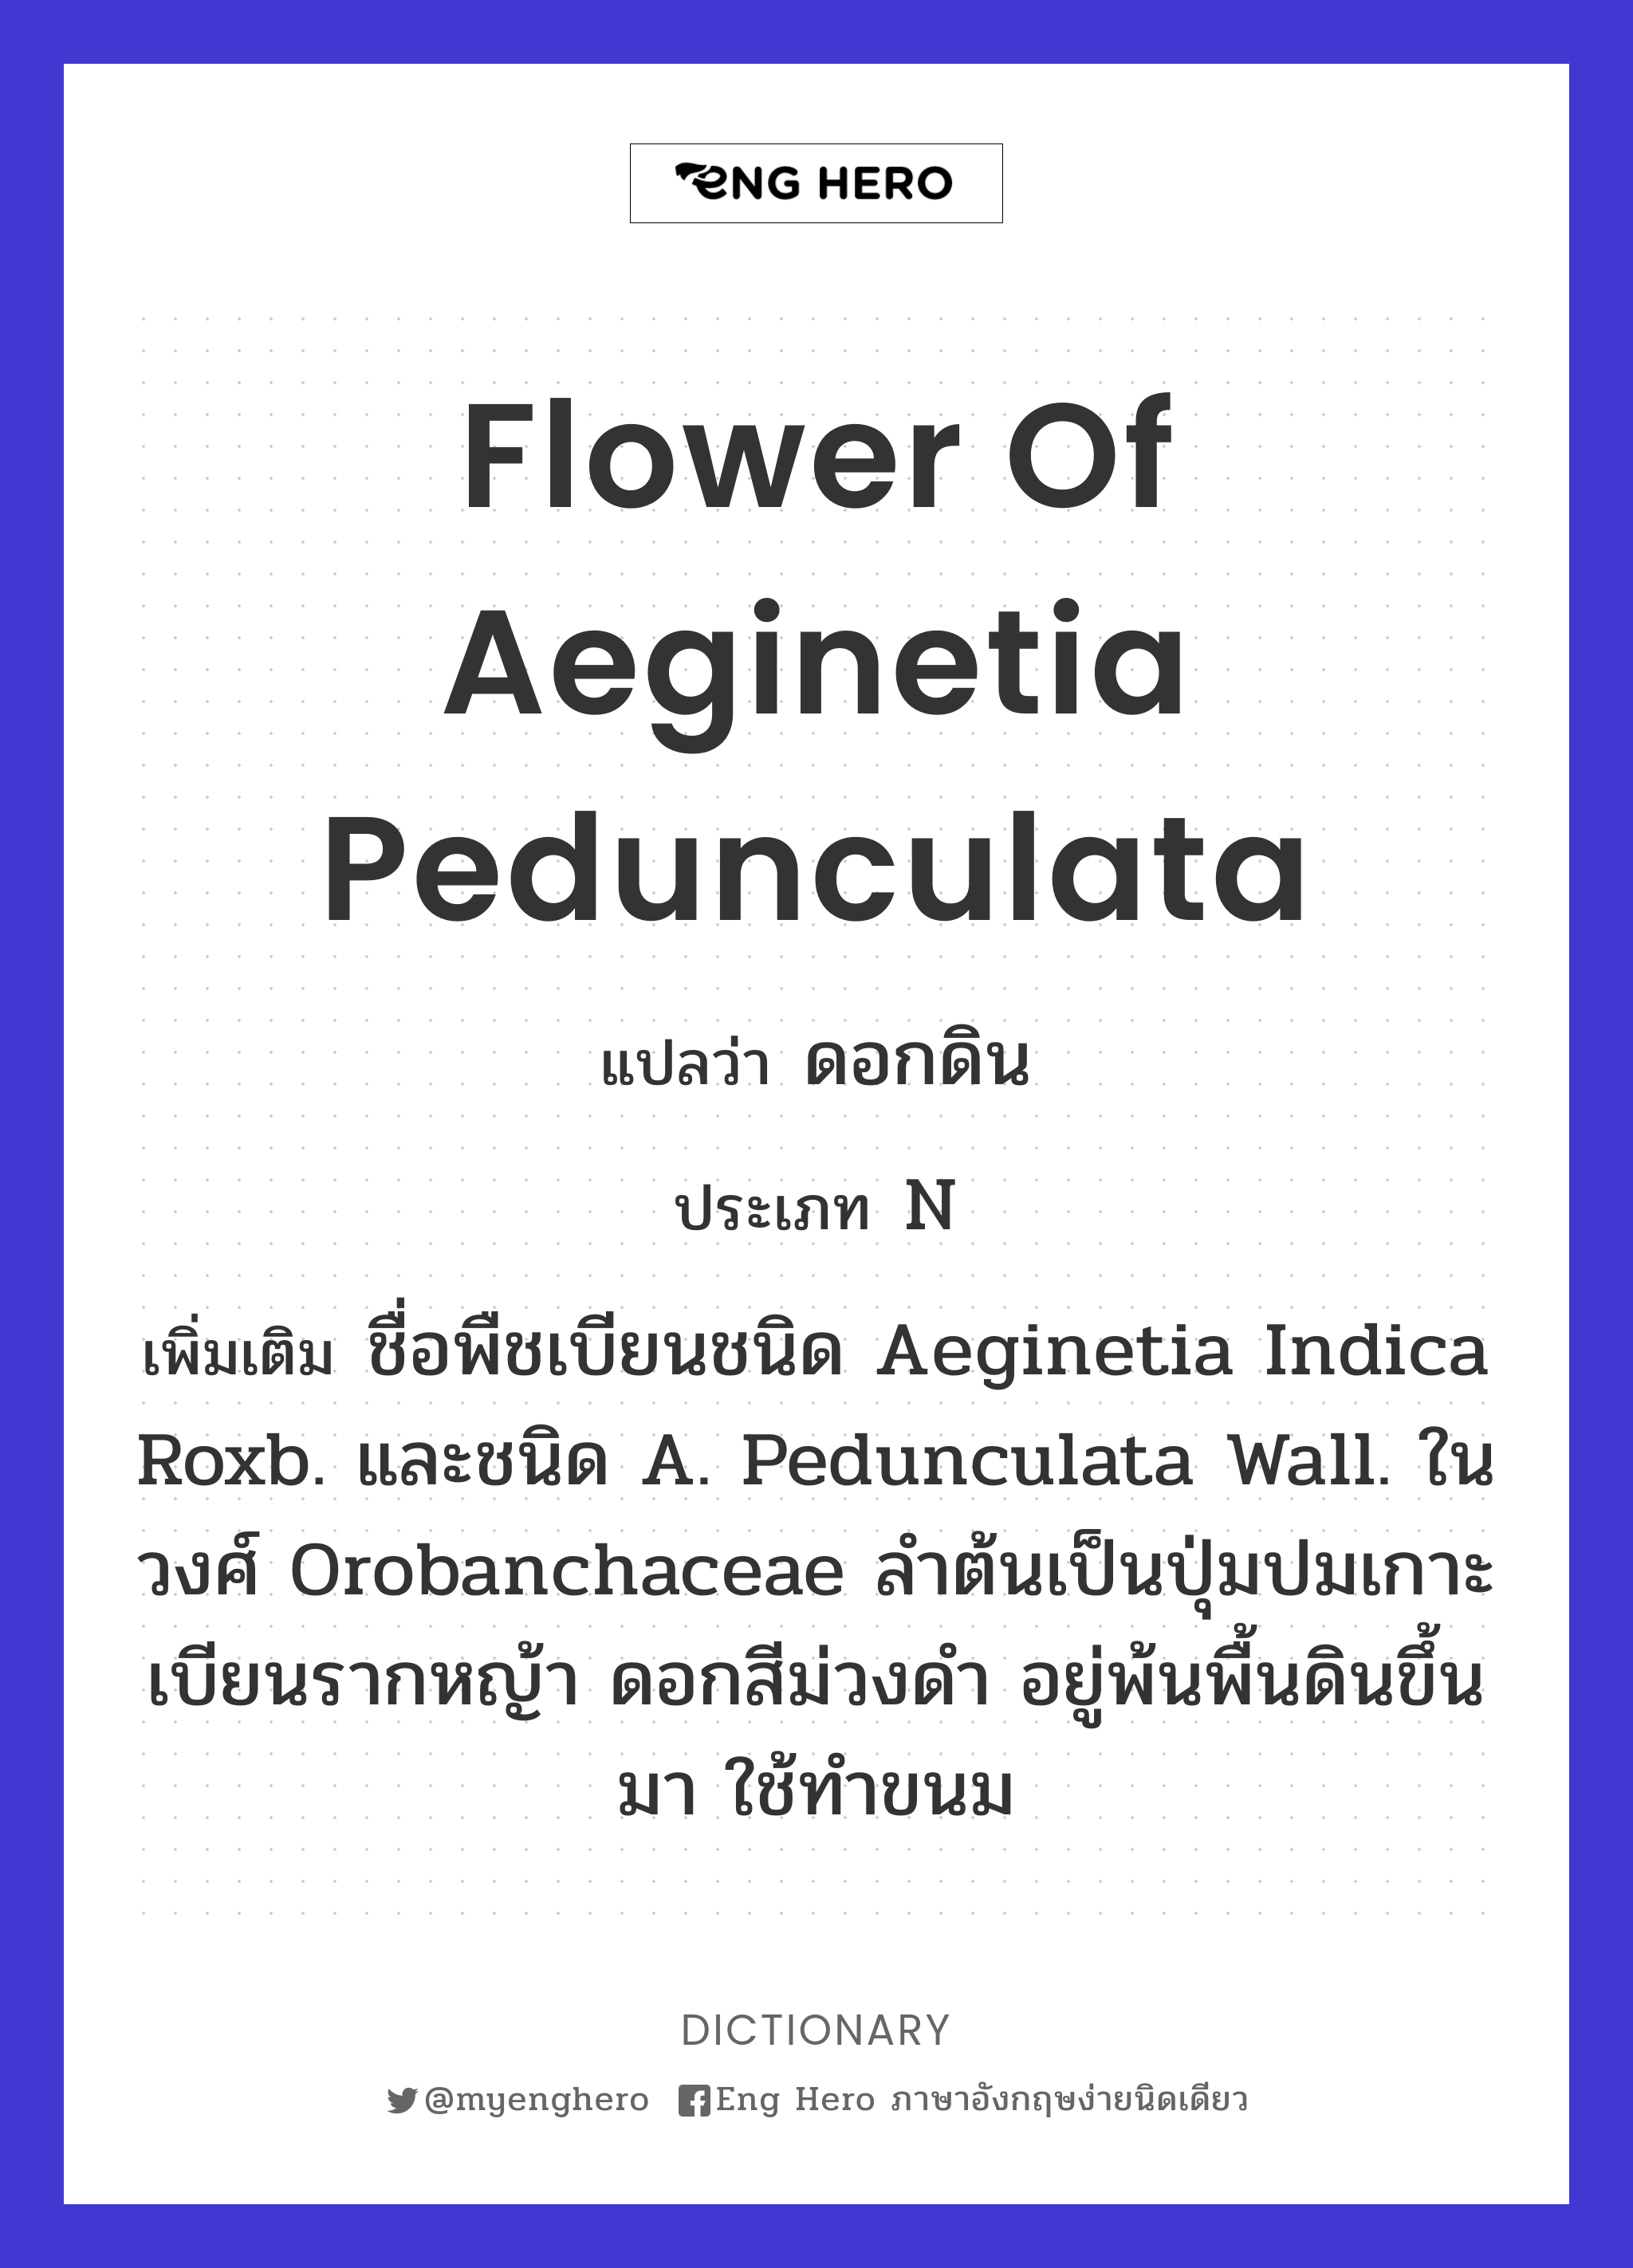 flower of Aeginetia pedunculata